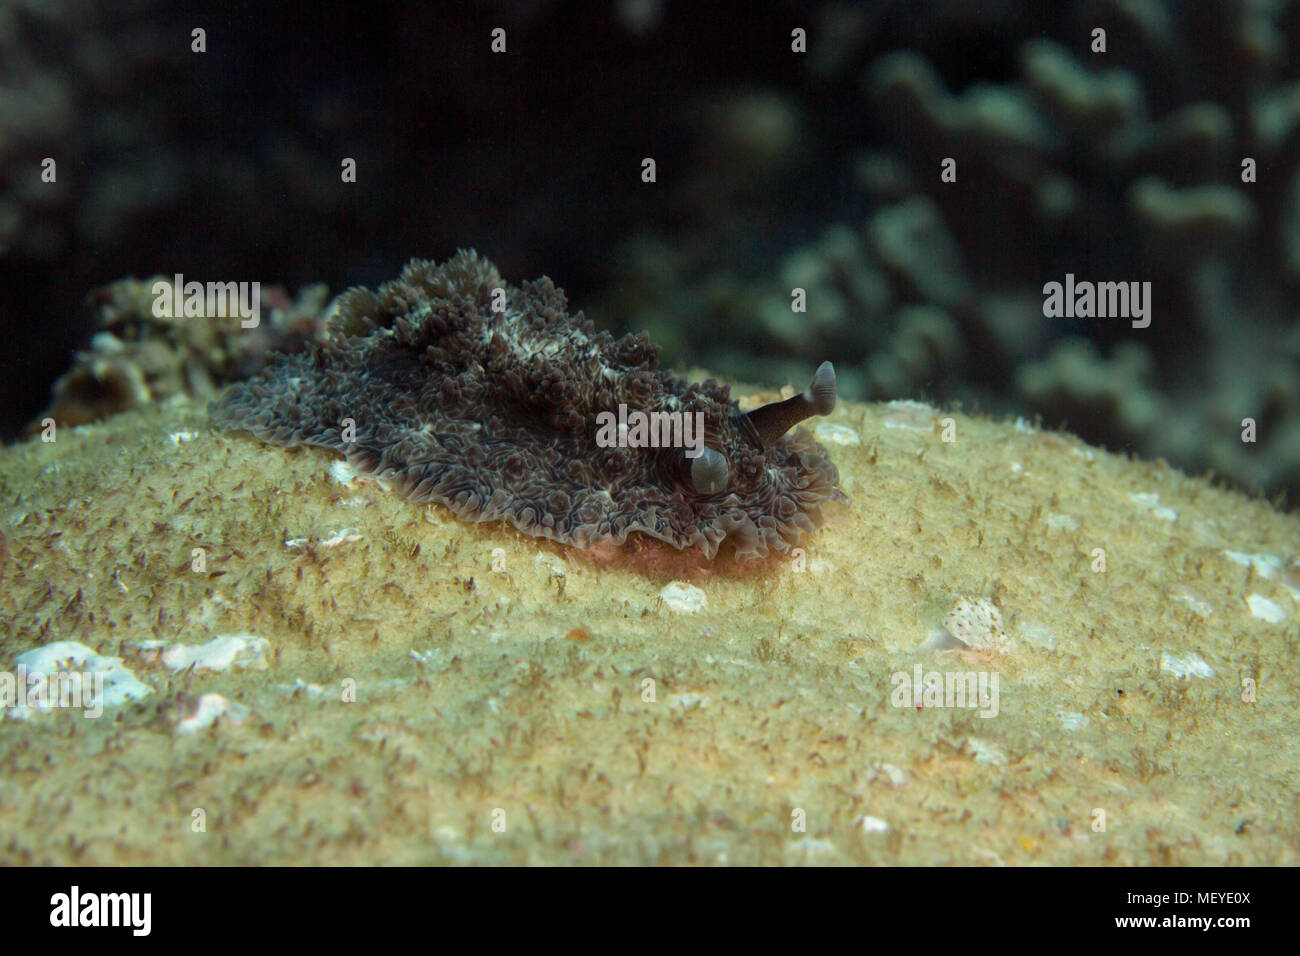 Nudibranch Dendrodoris tuberculosa. Picture was taken in the Banda sea, Ambon, West Papua, Indonesia Stock Photo